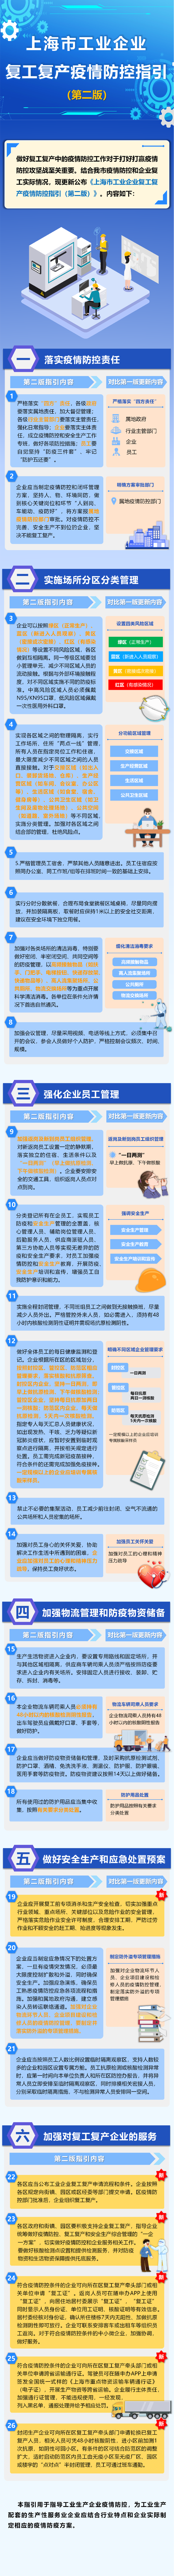 上海市工业企业复工复产疫情防控指引（第二版）发布 (http://www.hsqixing.com/) 国内 第1张